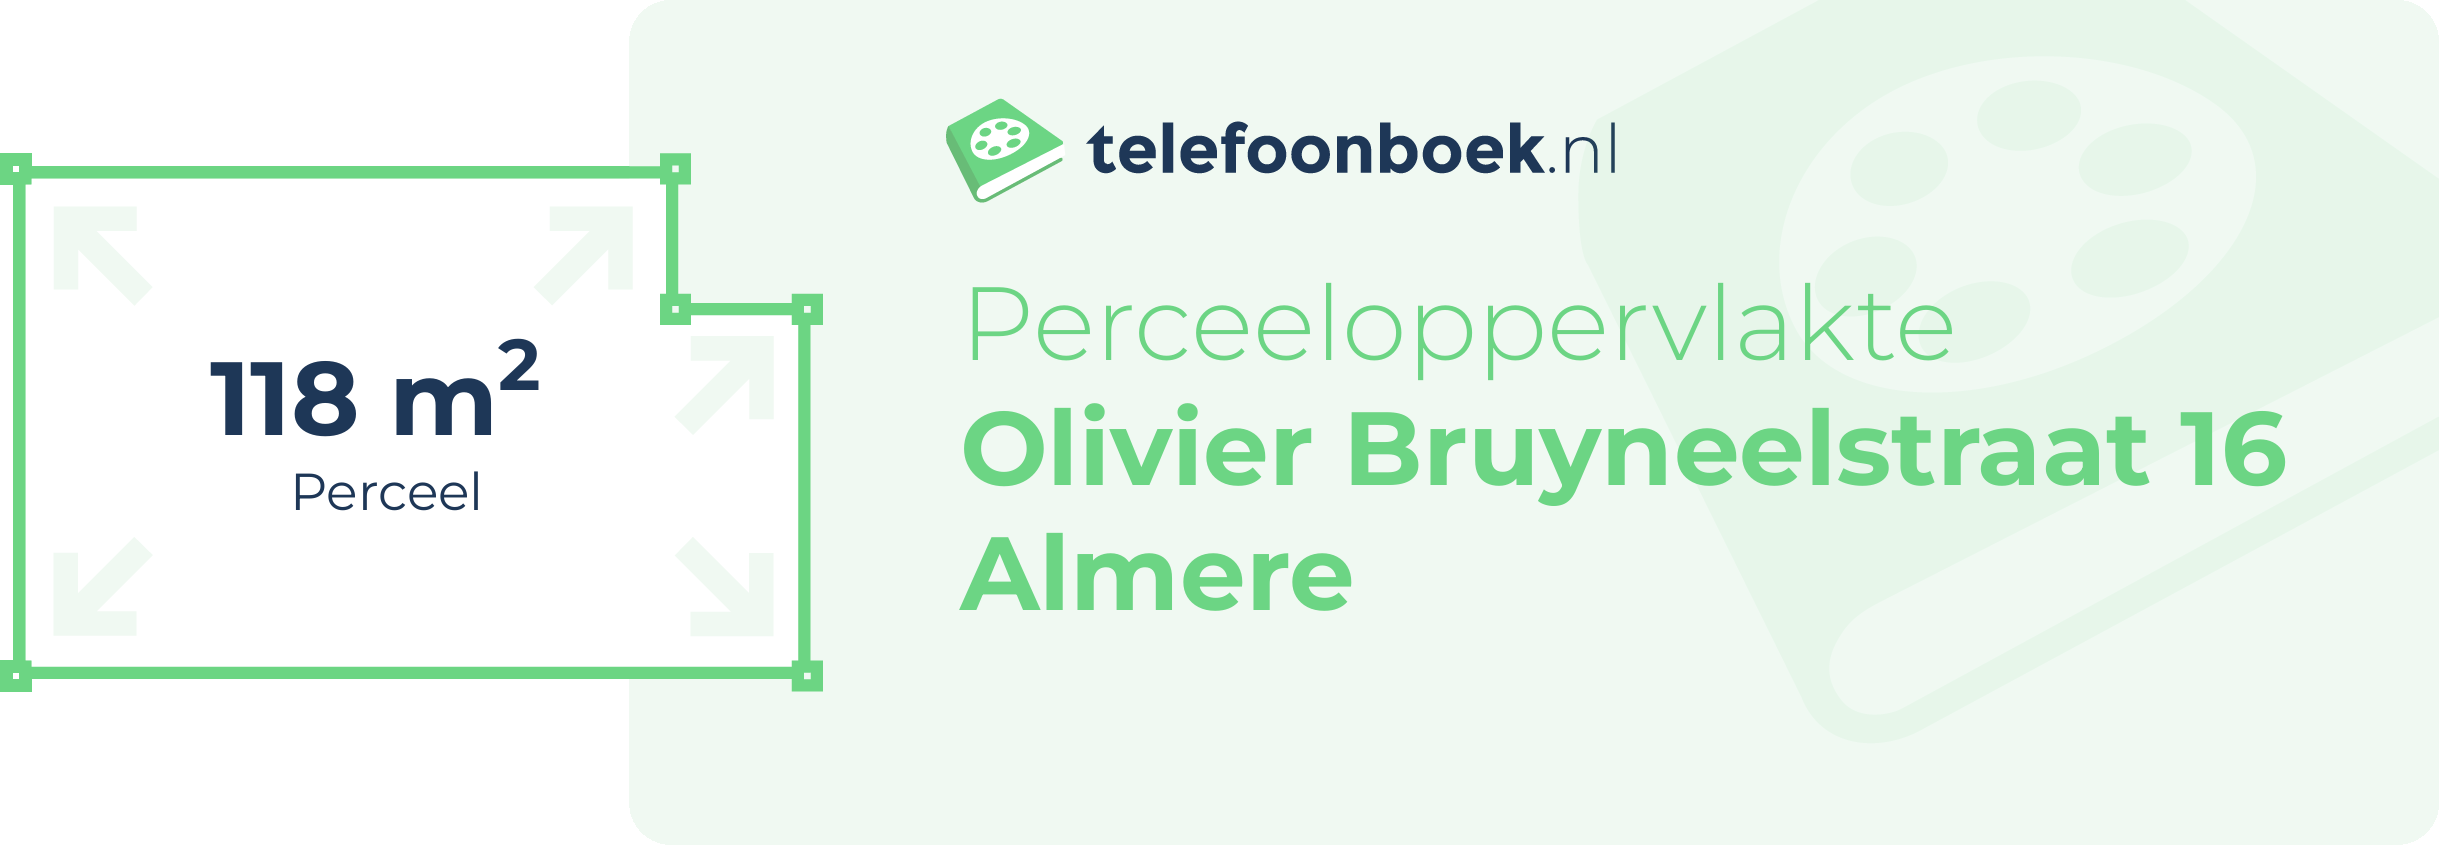 Perceeloppervlakte Olivier Bruyneelstraat 16 Almere